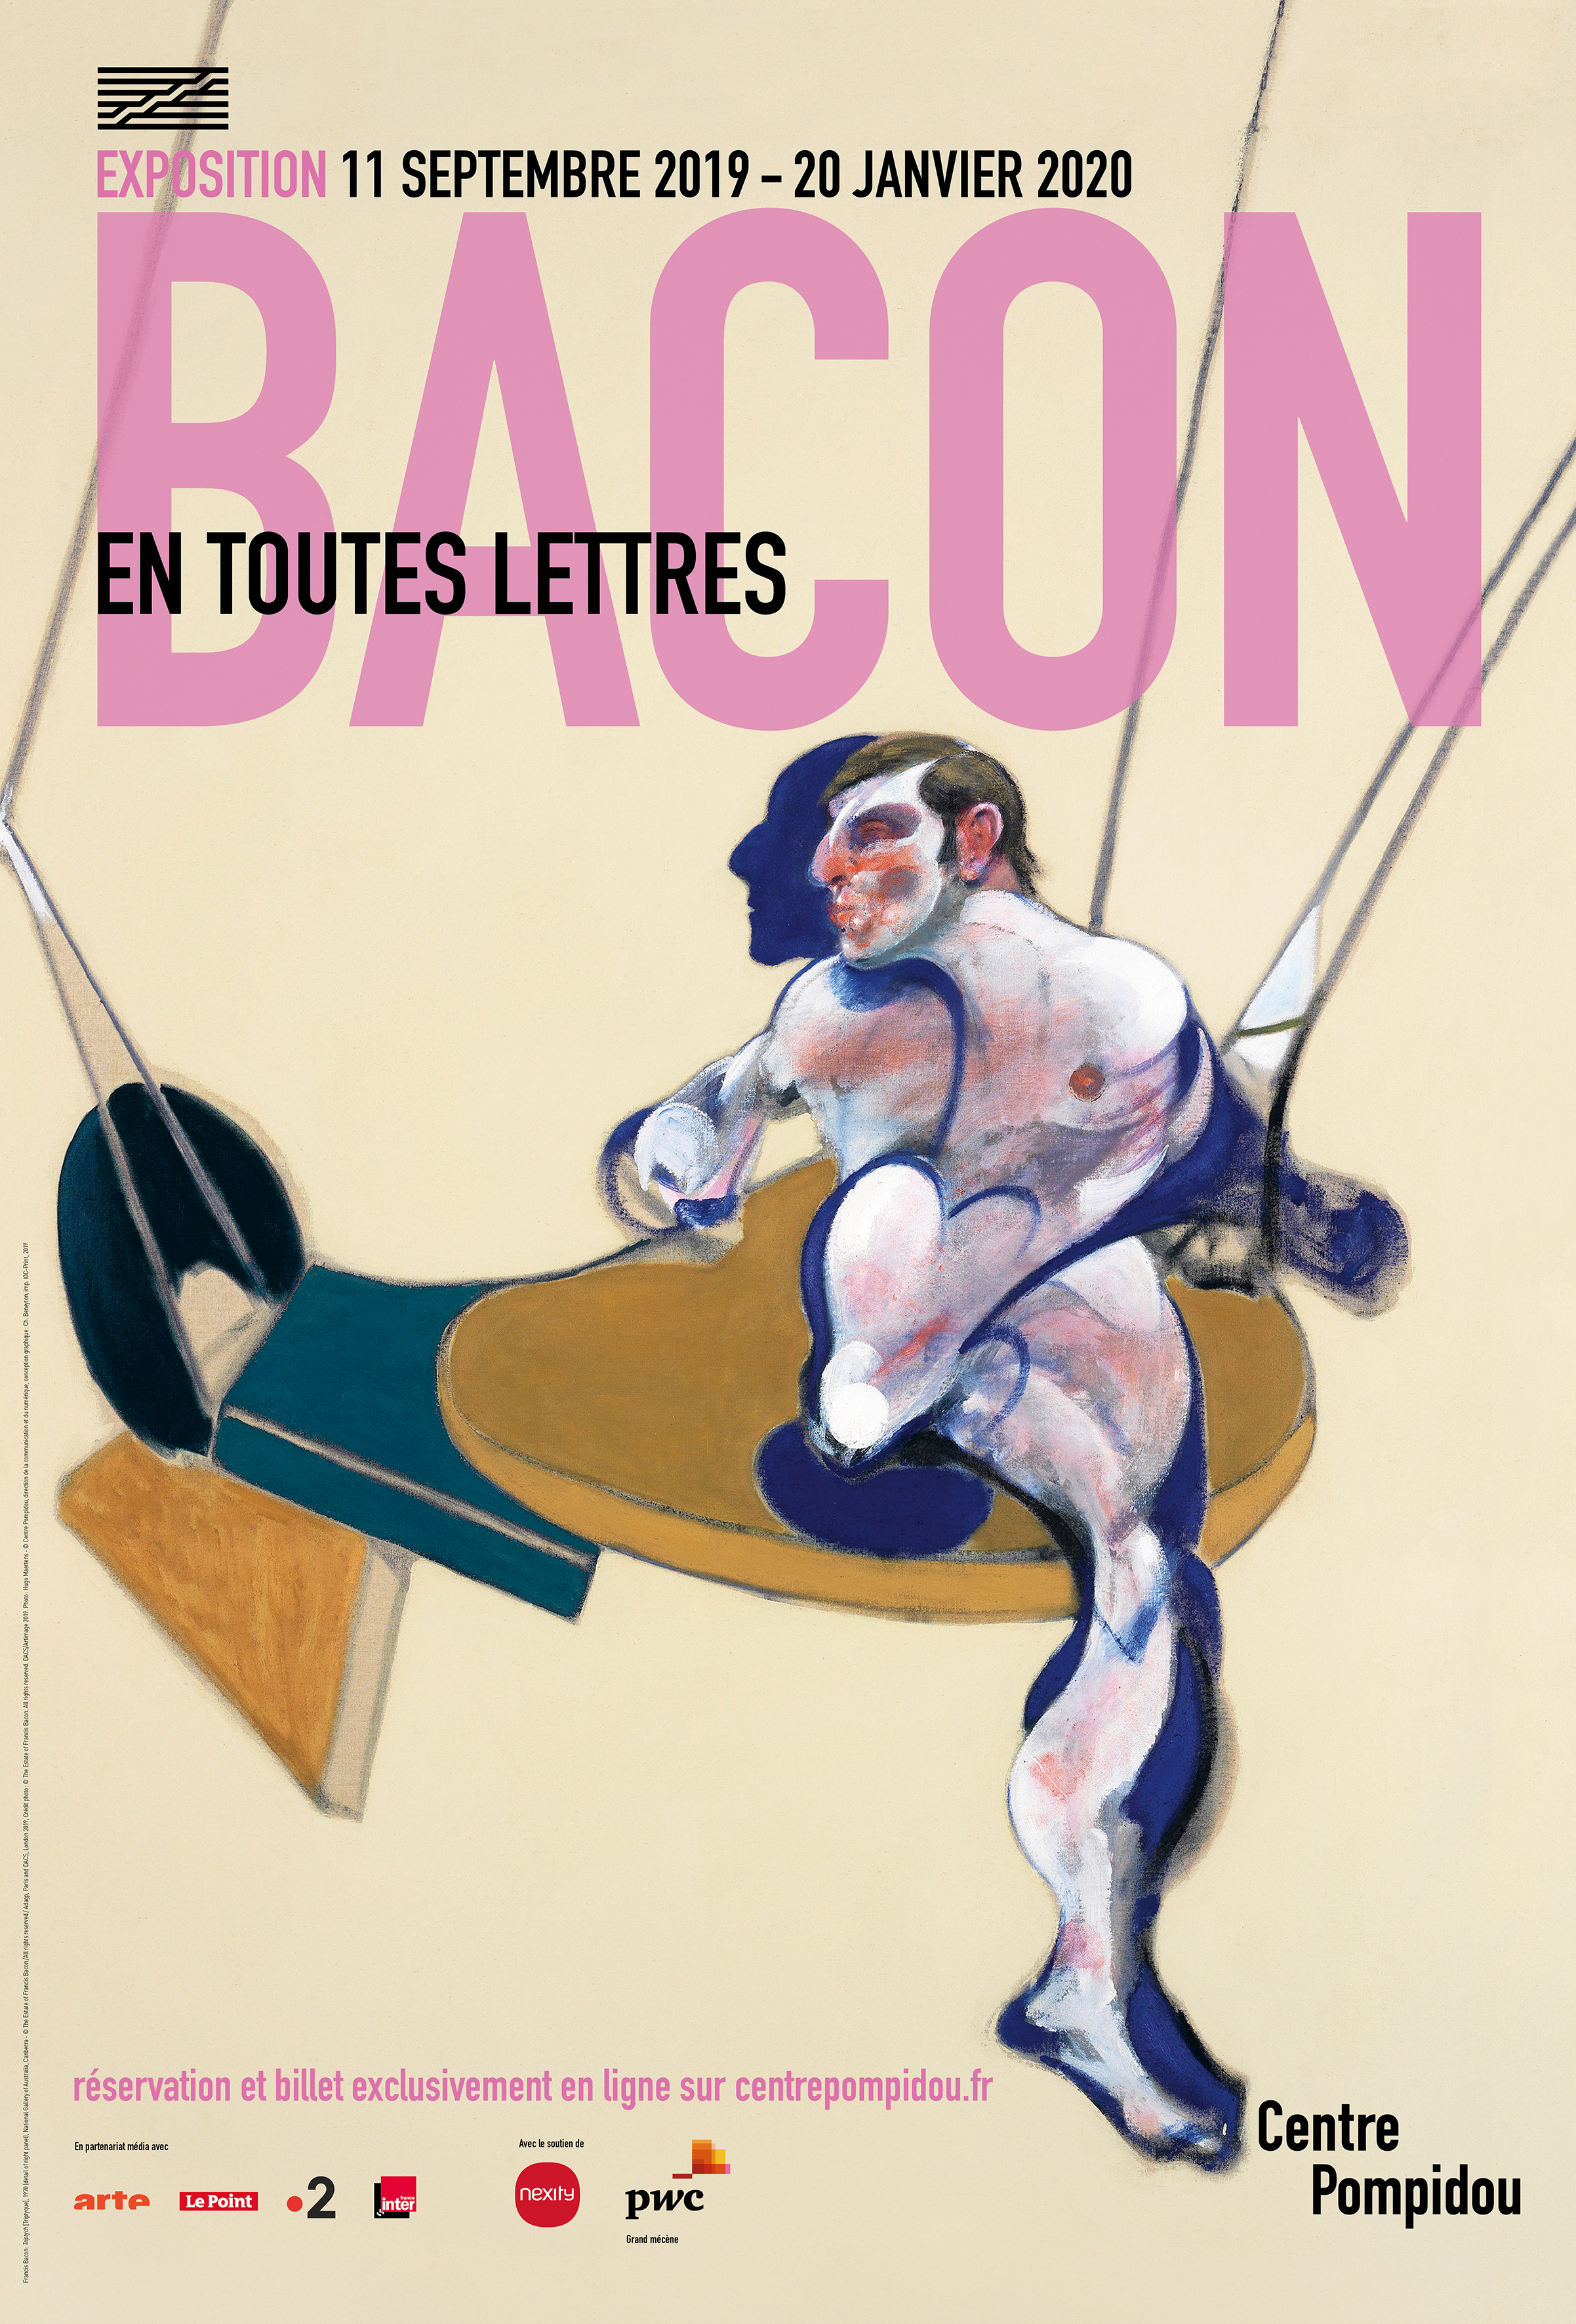 La Francis Bacon MB Art Foundation apporte son soutien à une grande exposition Francis Bacon au Centre Pompidou à Paris